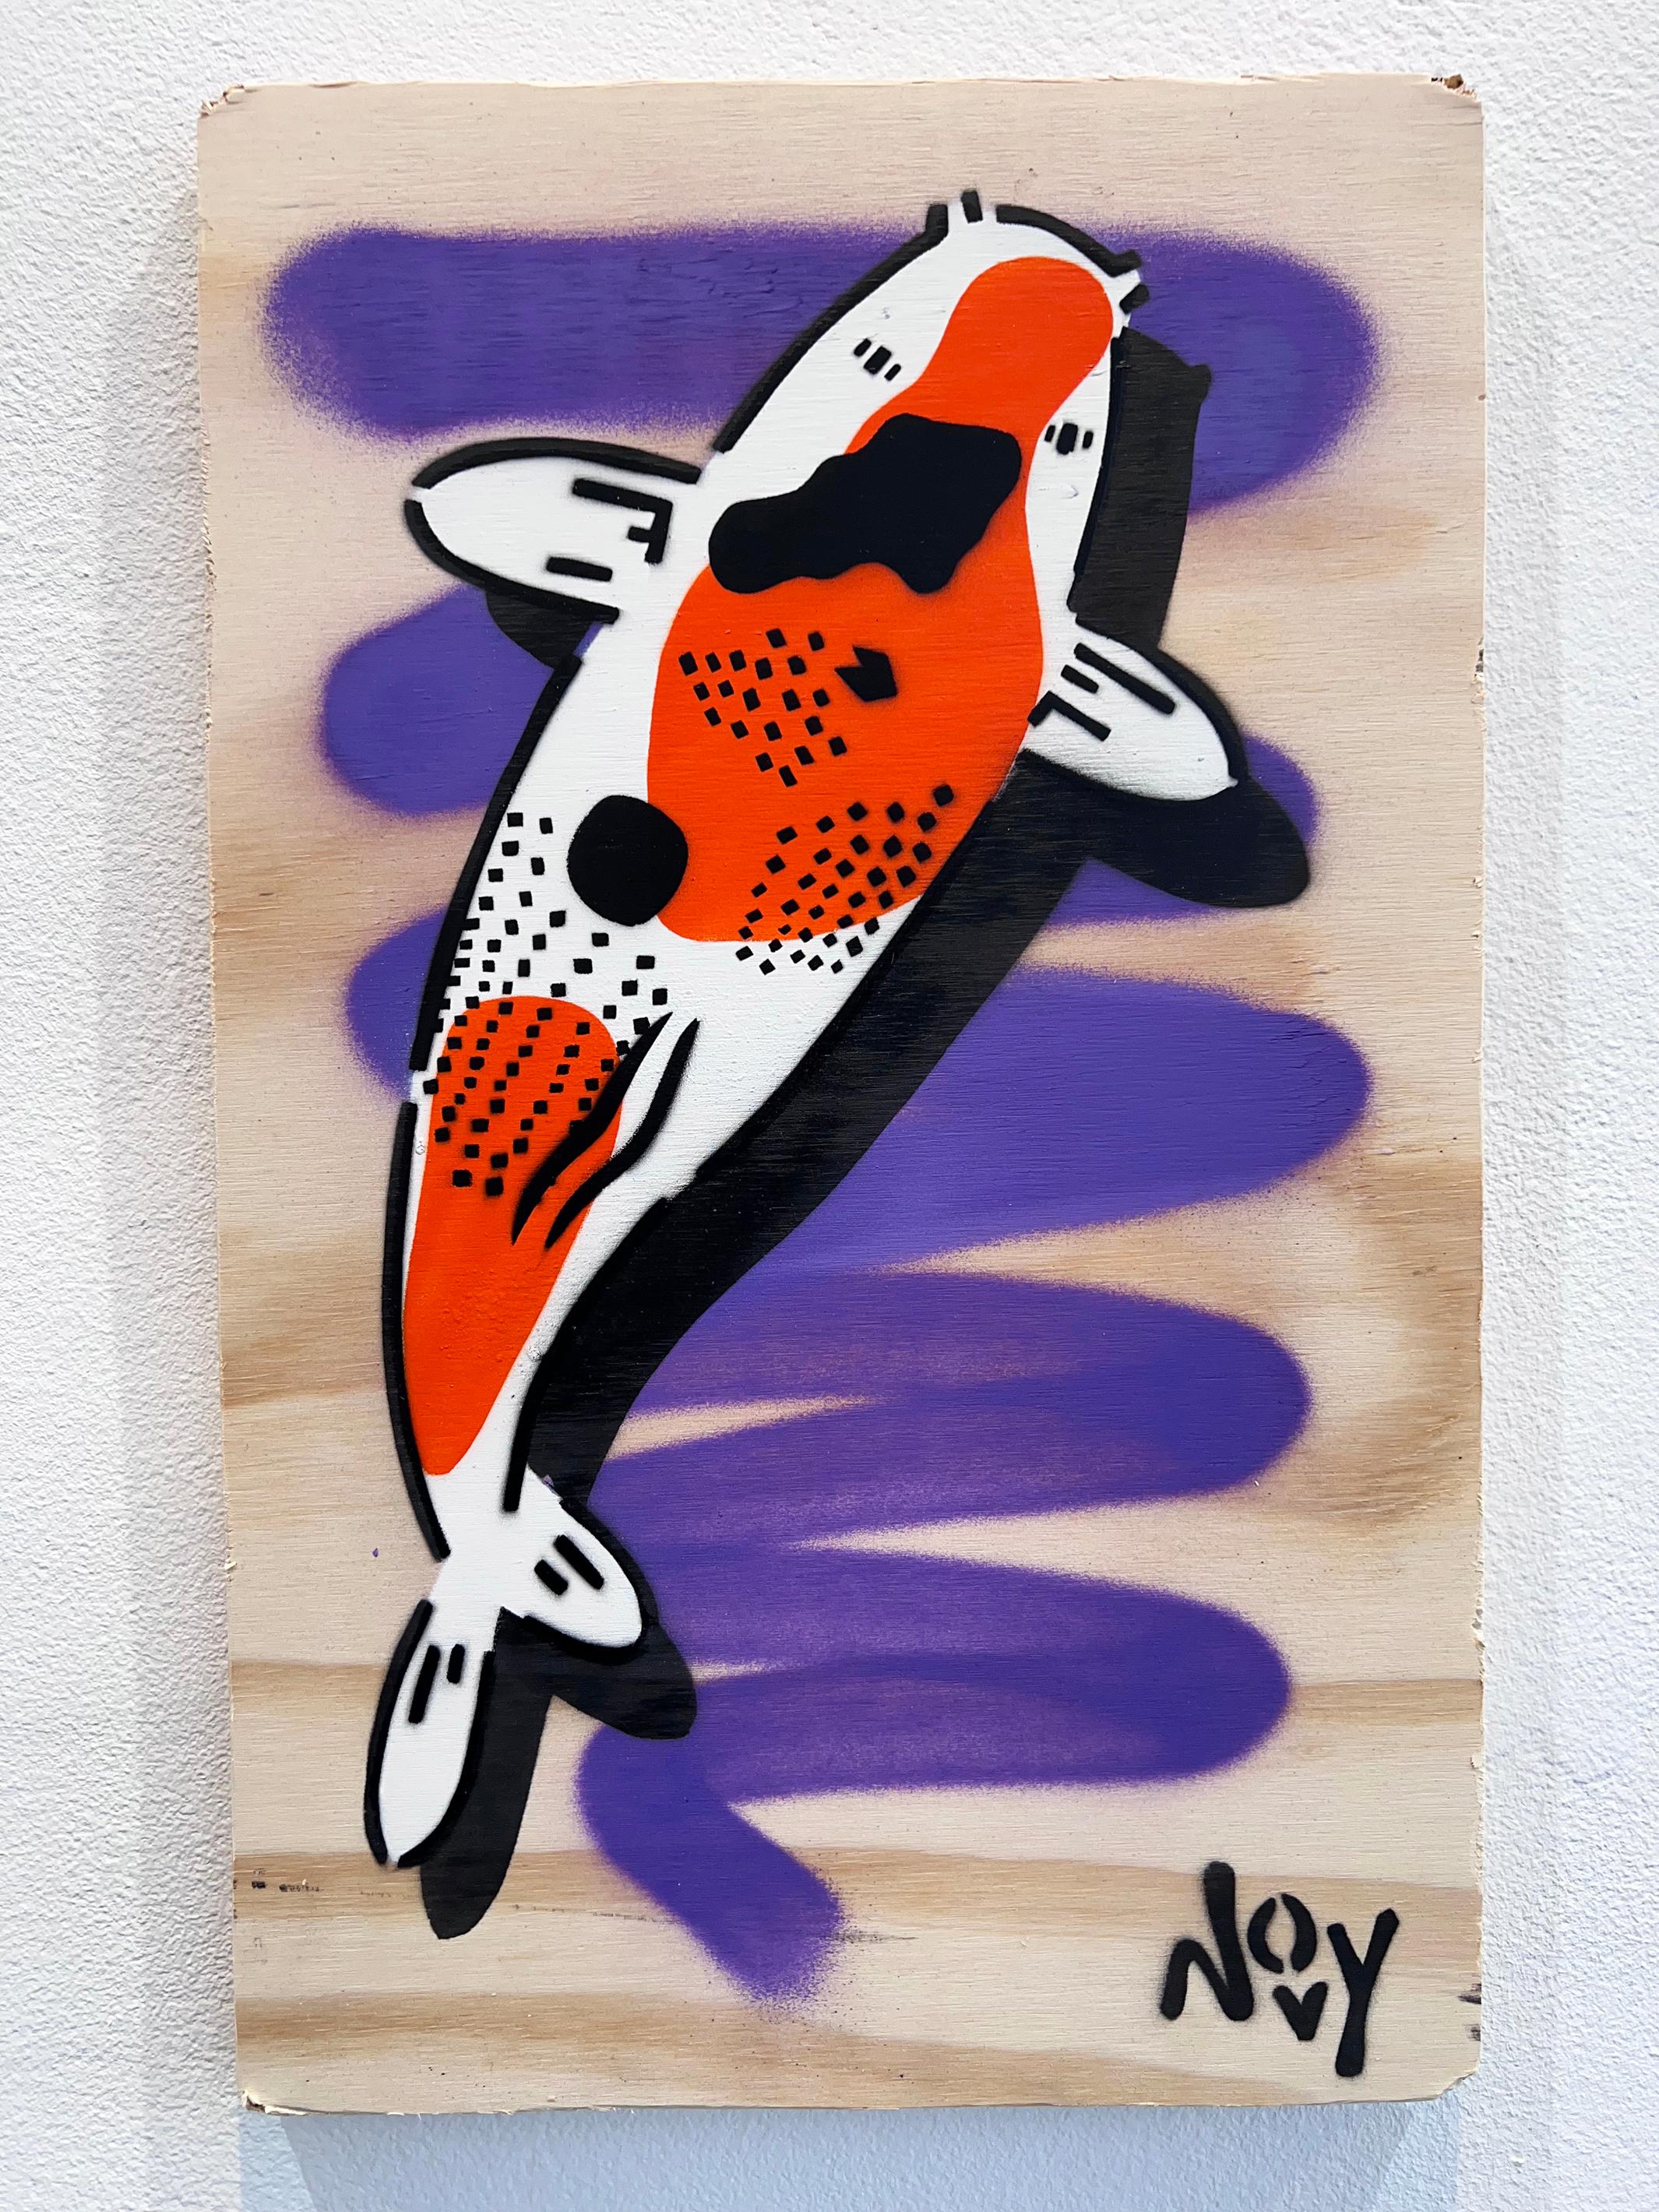 Hope 3 - Stencil Koi Art - Painting by Jeremy Novy